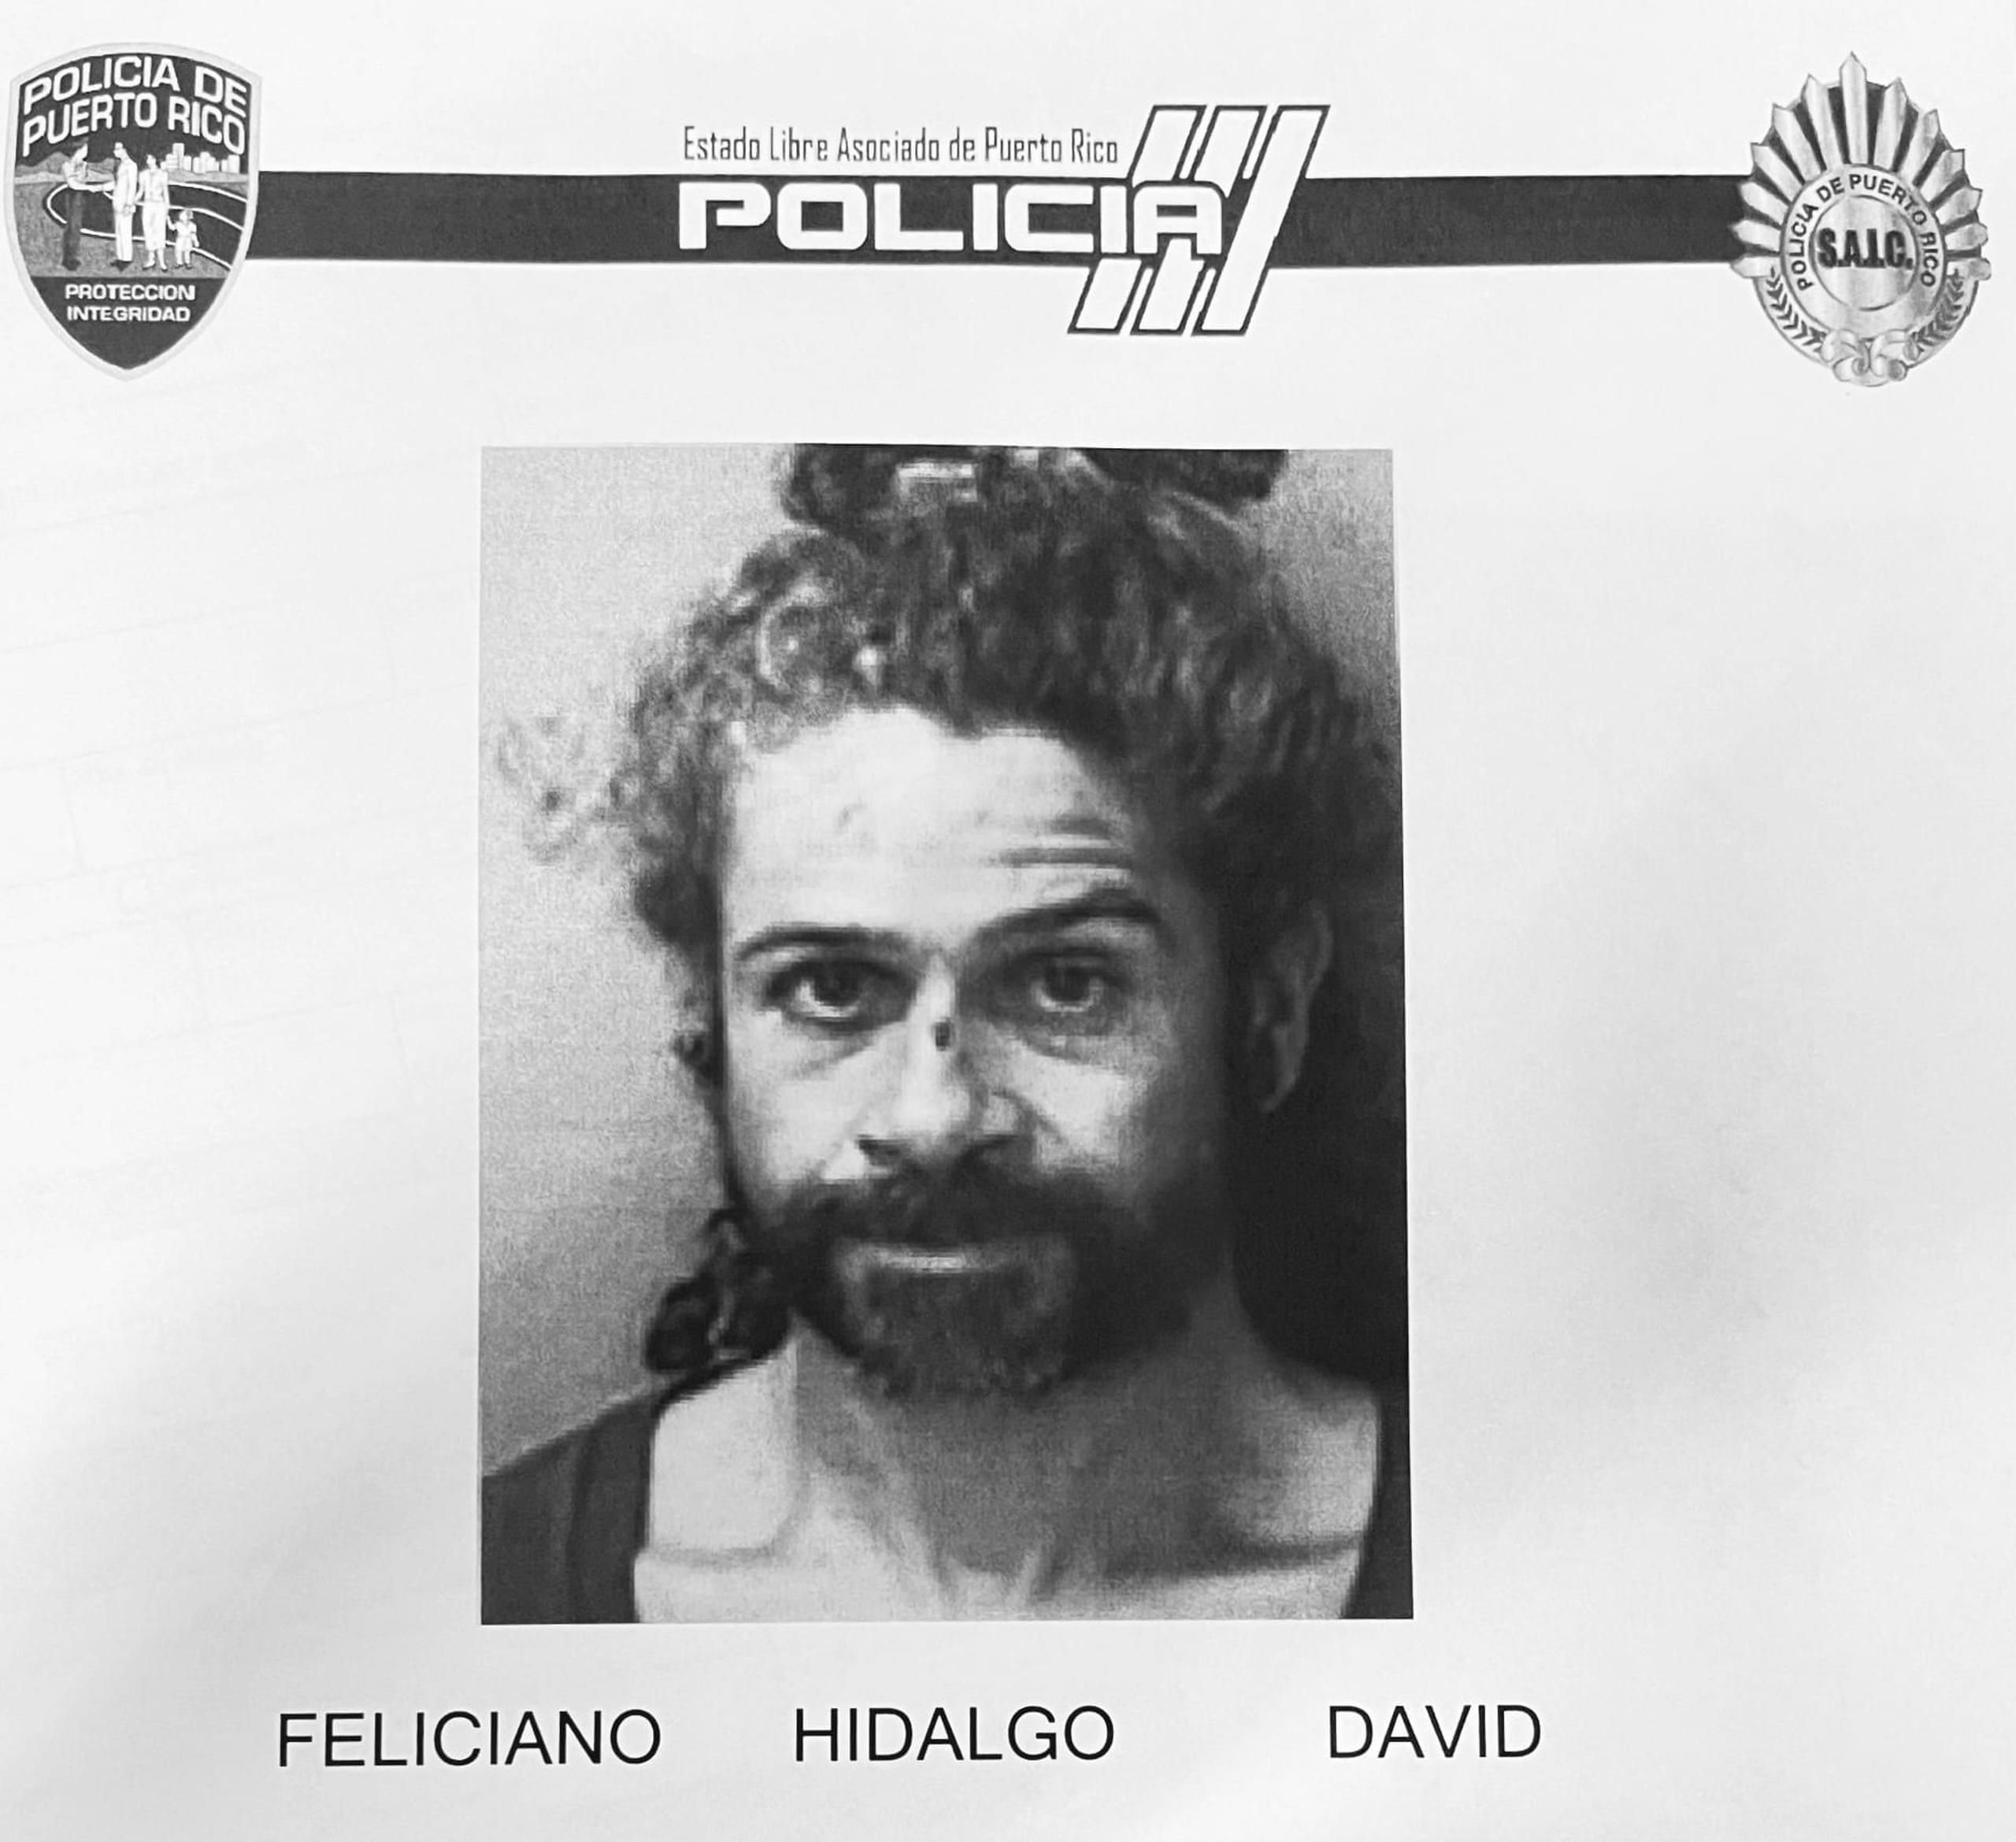 David Feliciano Hidalgo enfrenta un cargo por maltrato a una persona de edad avanzada.